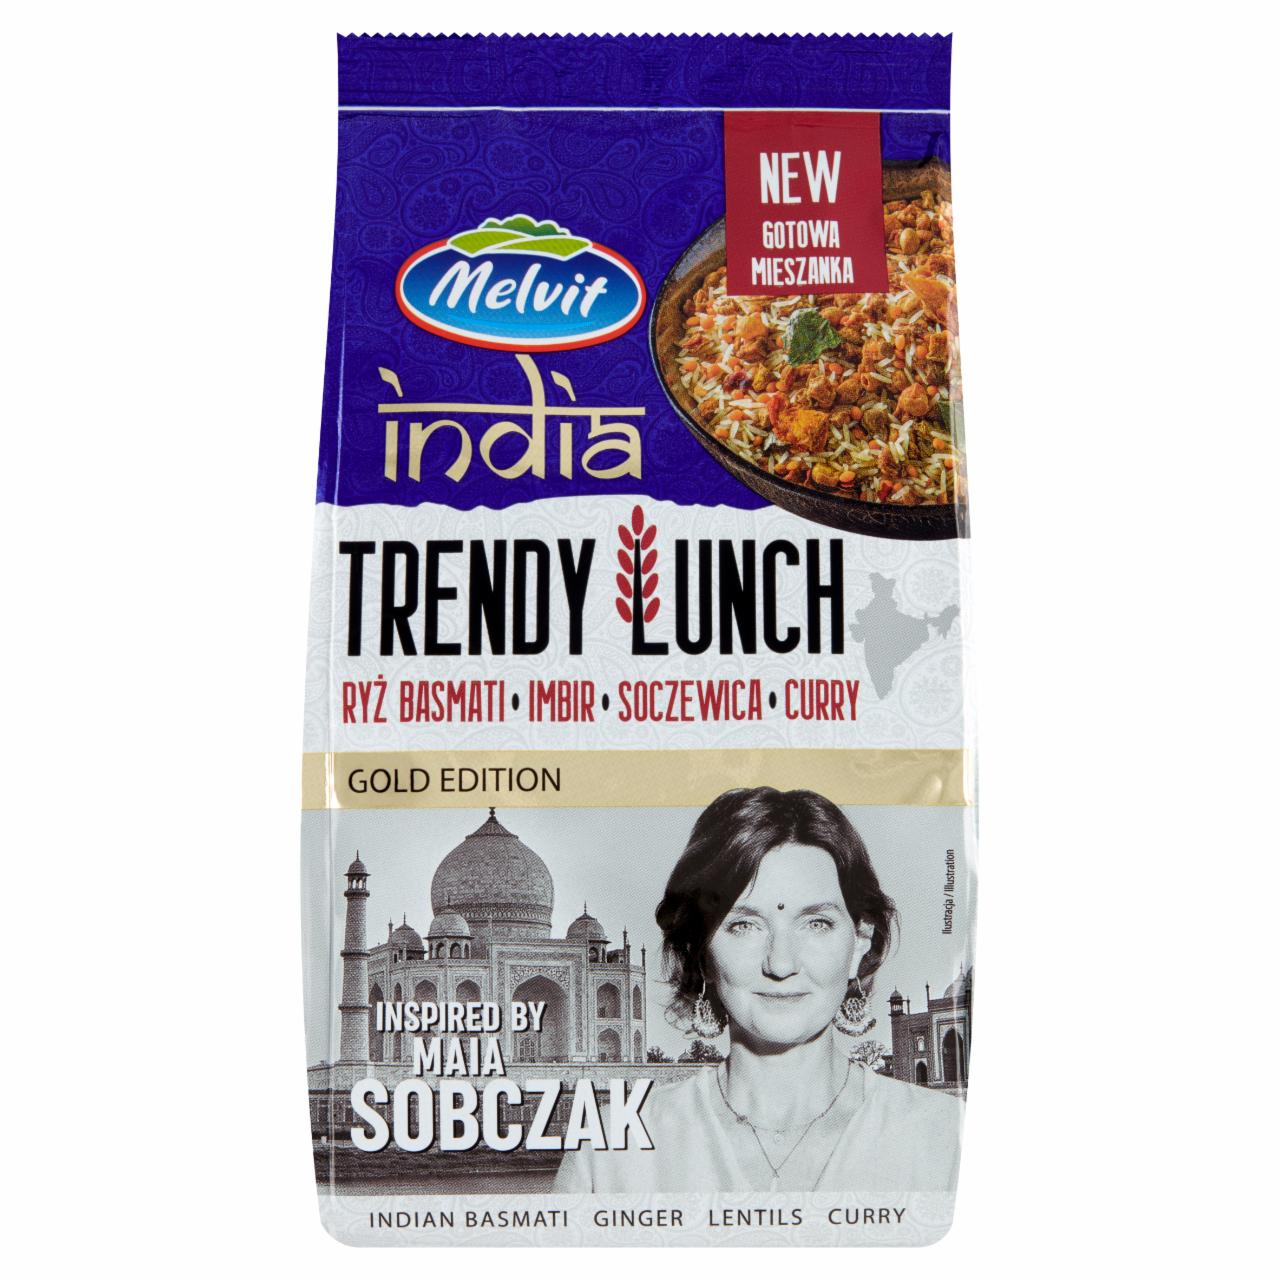 Zdjęcia - Melvit India Trendy Lunch ryż basmati imbir soczewica curry 300 g